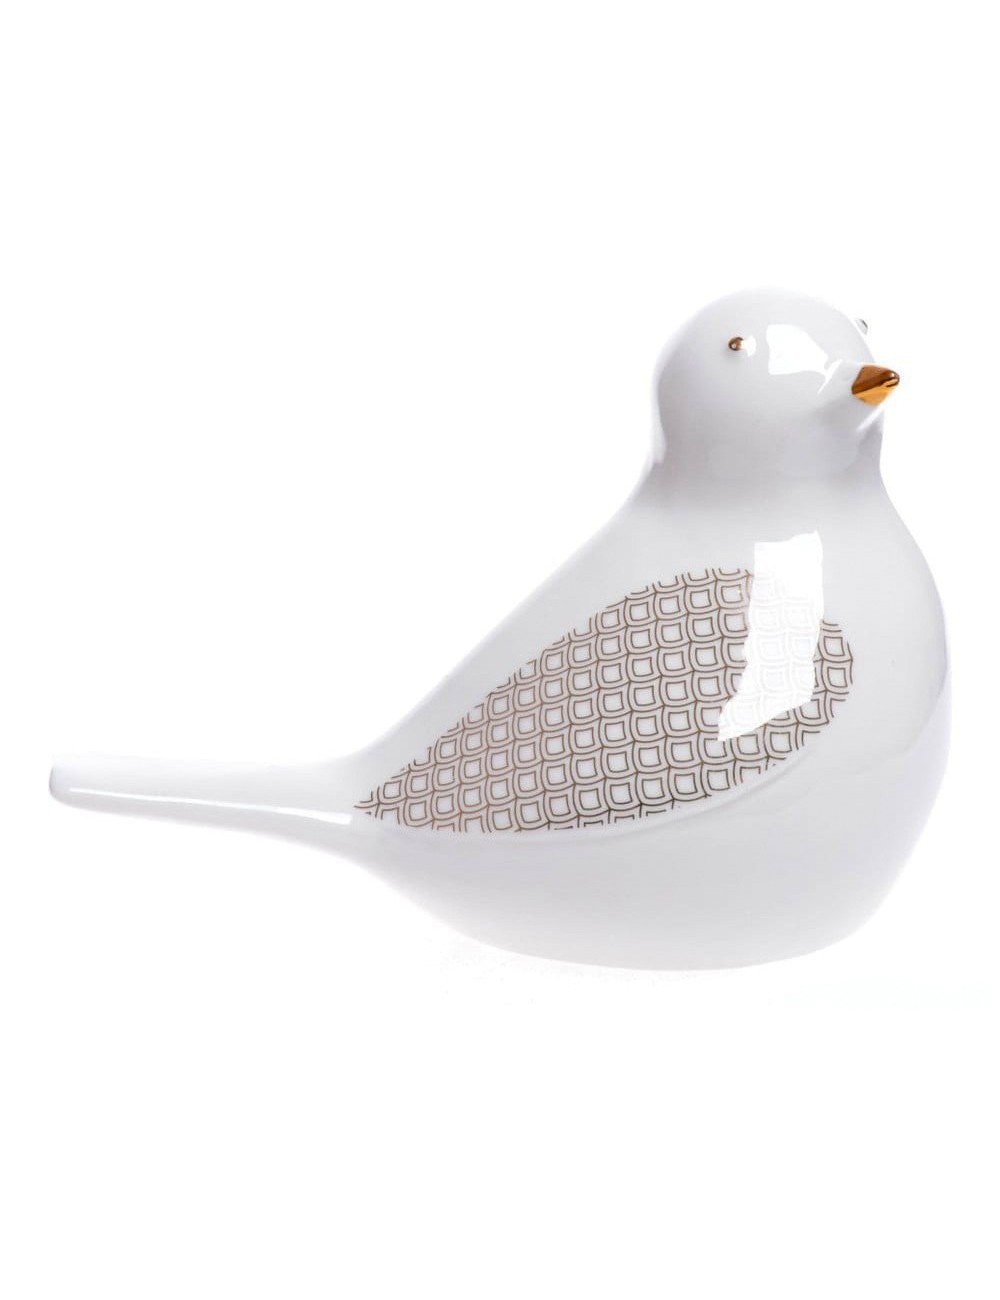 biały złoty ptak ptaszek ceramiczny figurka glamour